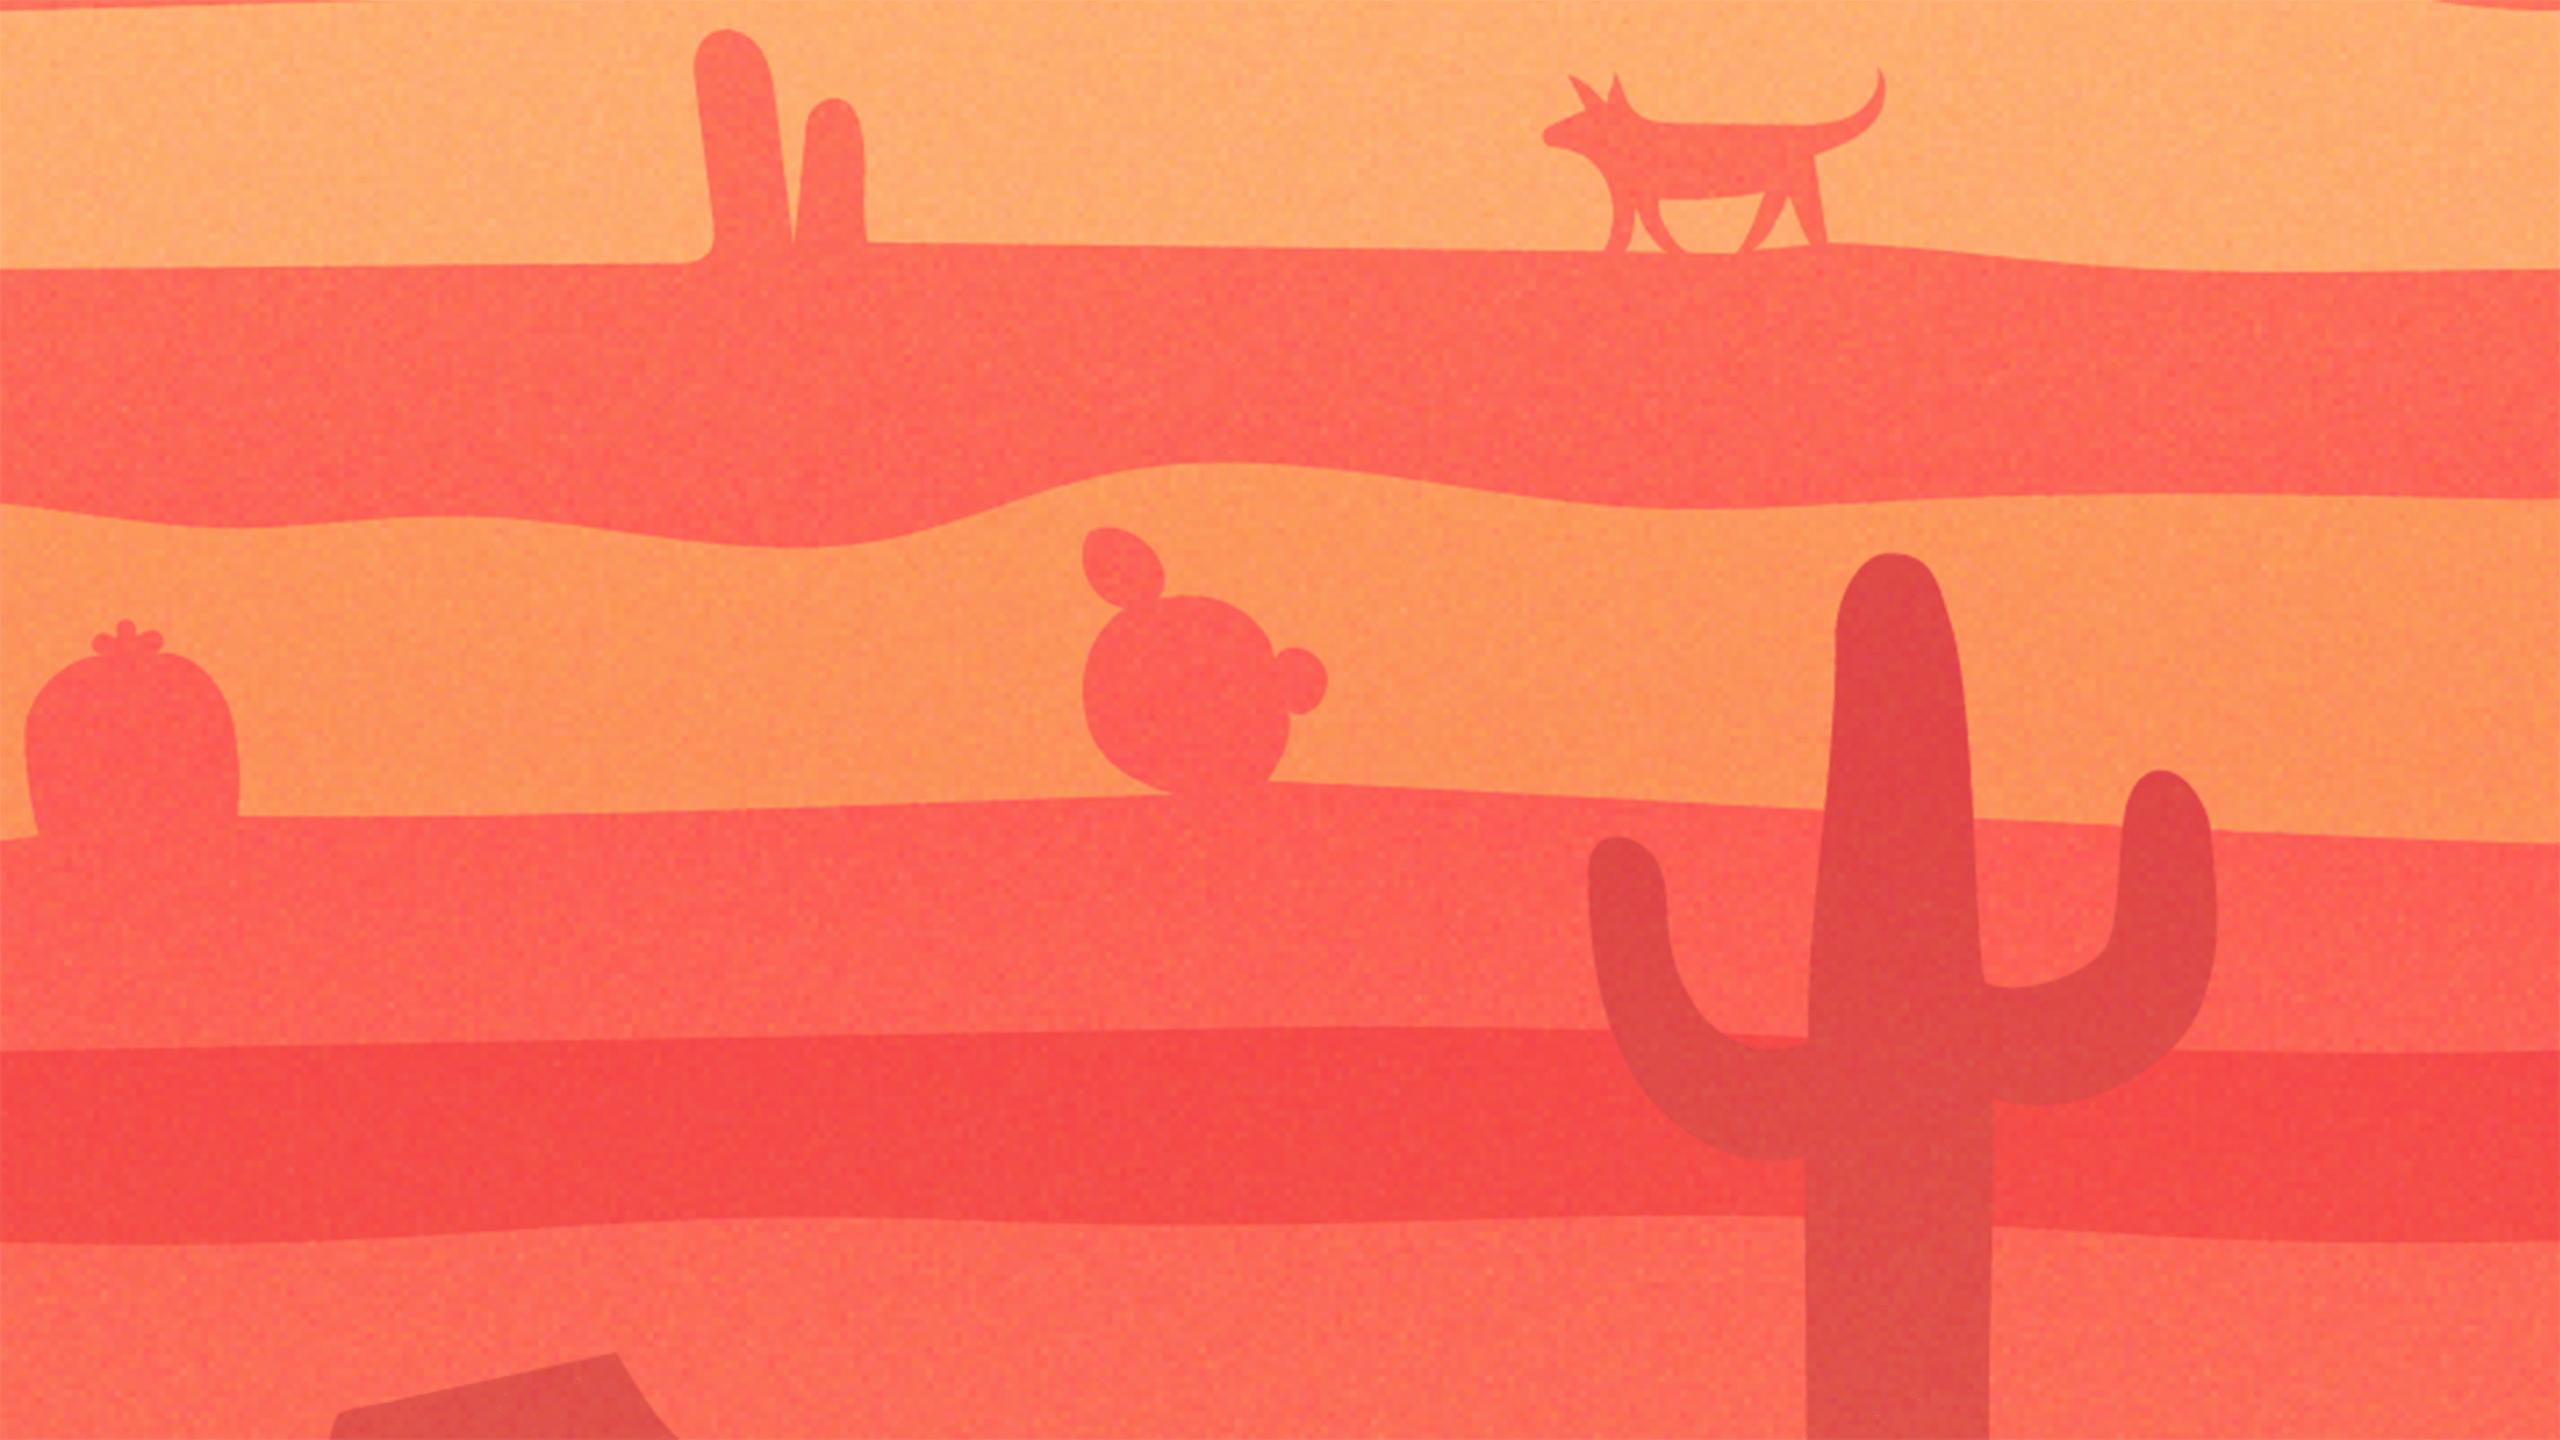 Monthly Desktop Wallpaper: Desert Dreams. Strategic Branding & Design